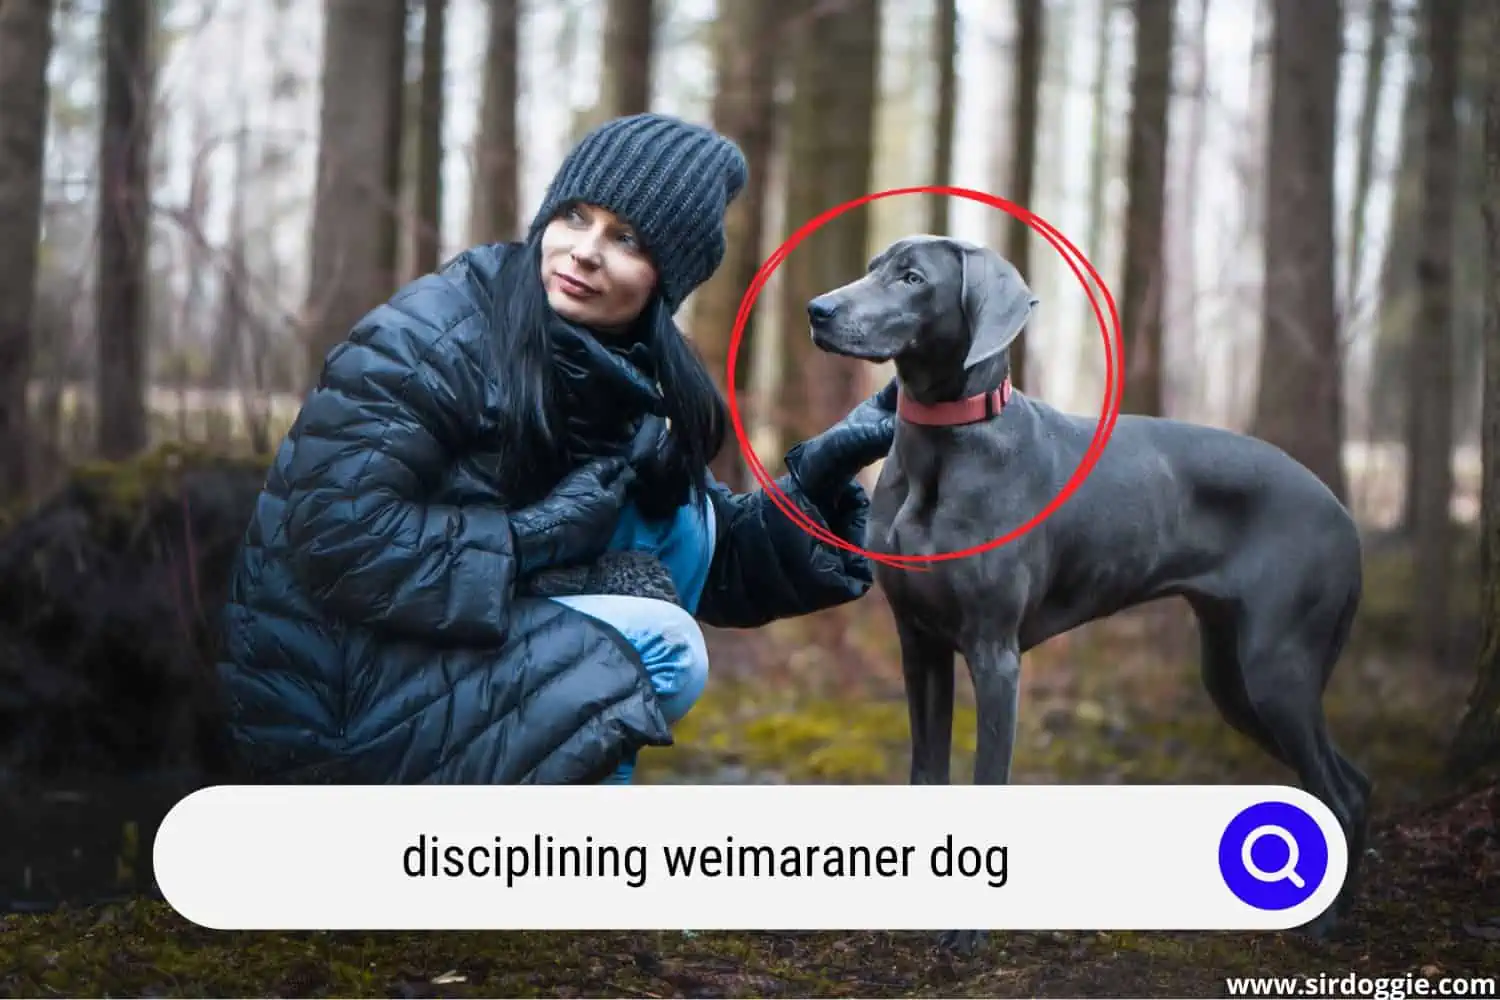 owner disciplining weimaraner dog